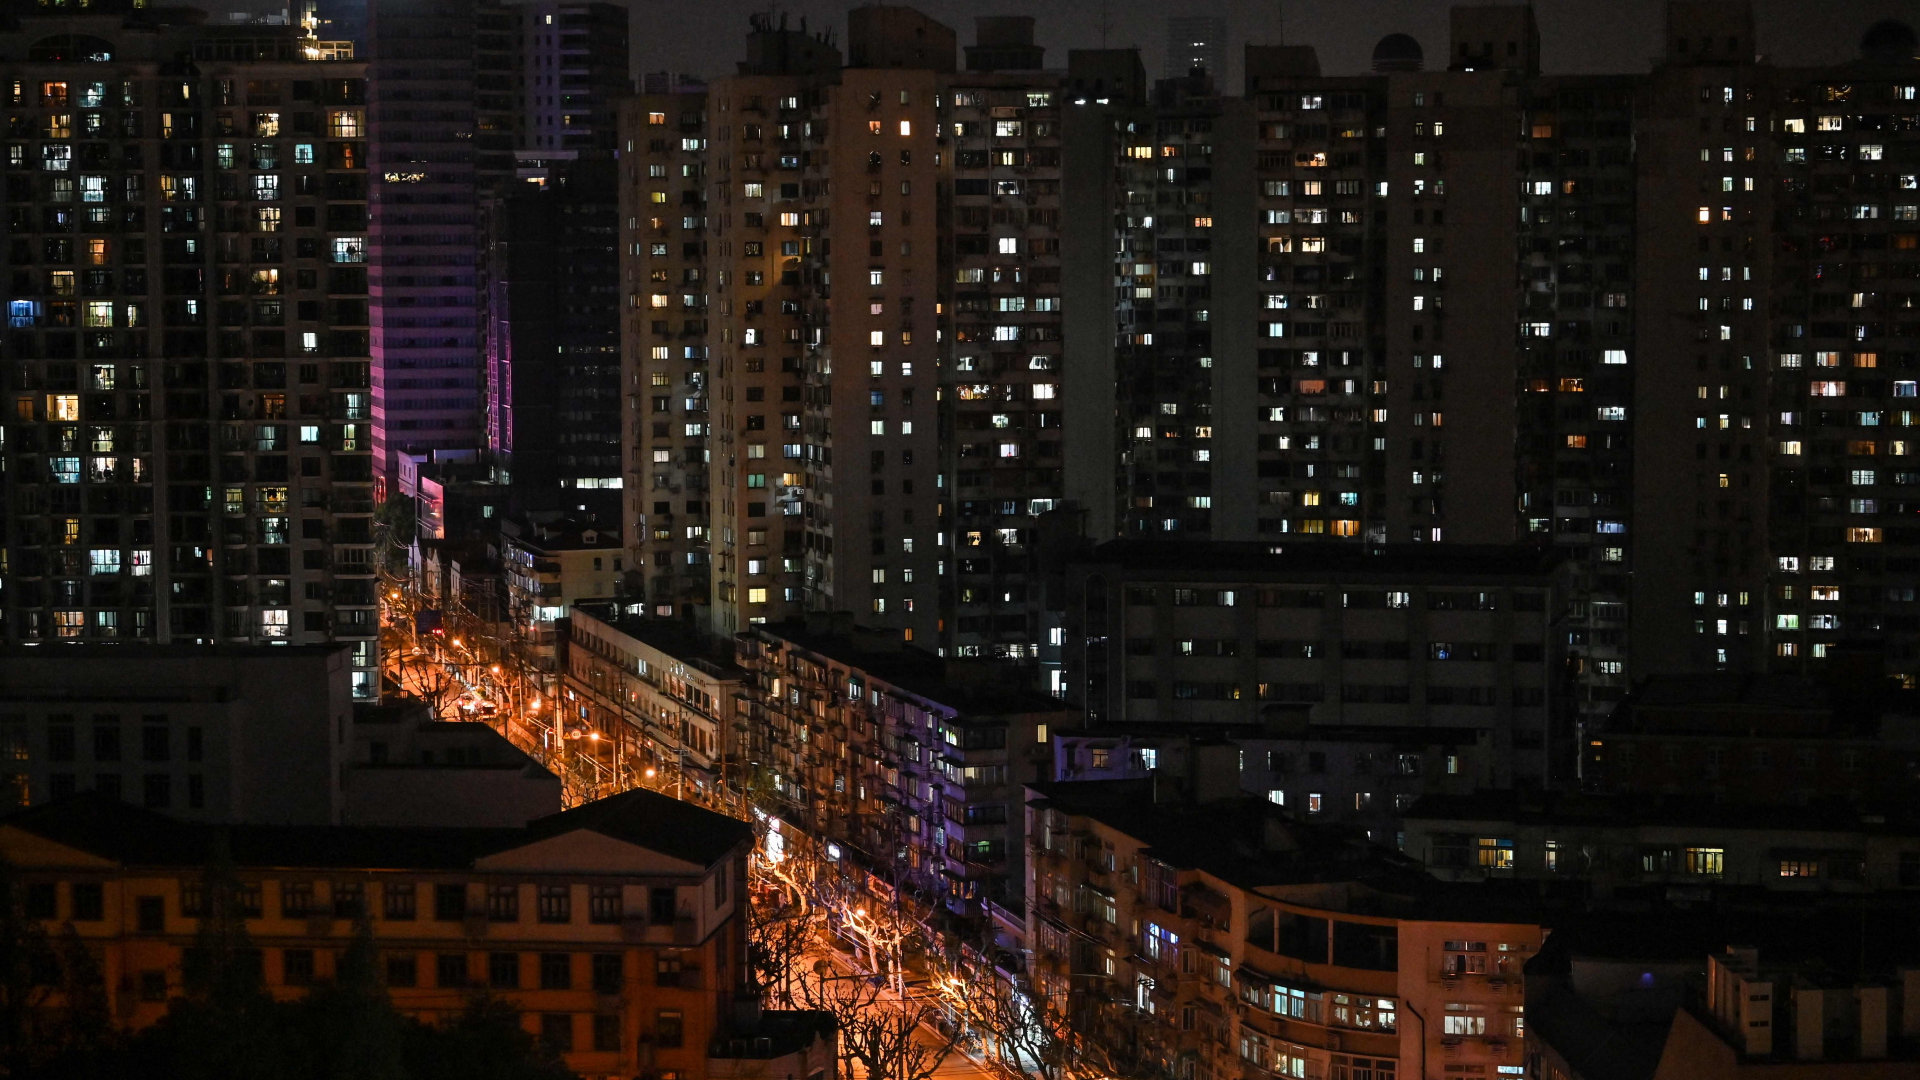 Erleuchtete Häuser in Shanghai während des Lockdowns | AFP